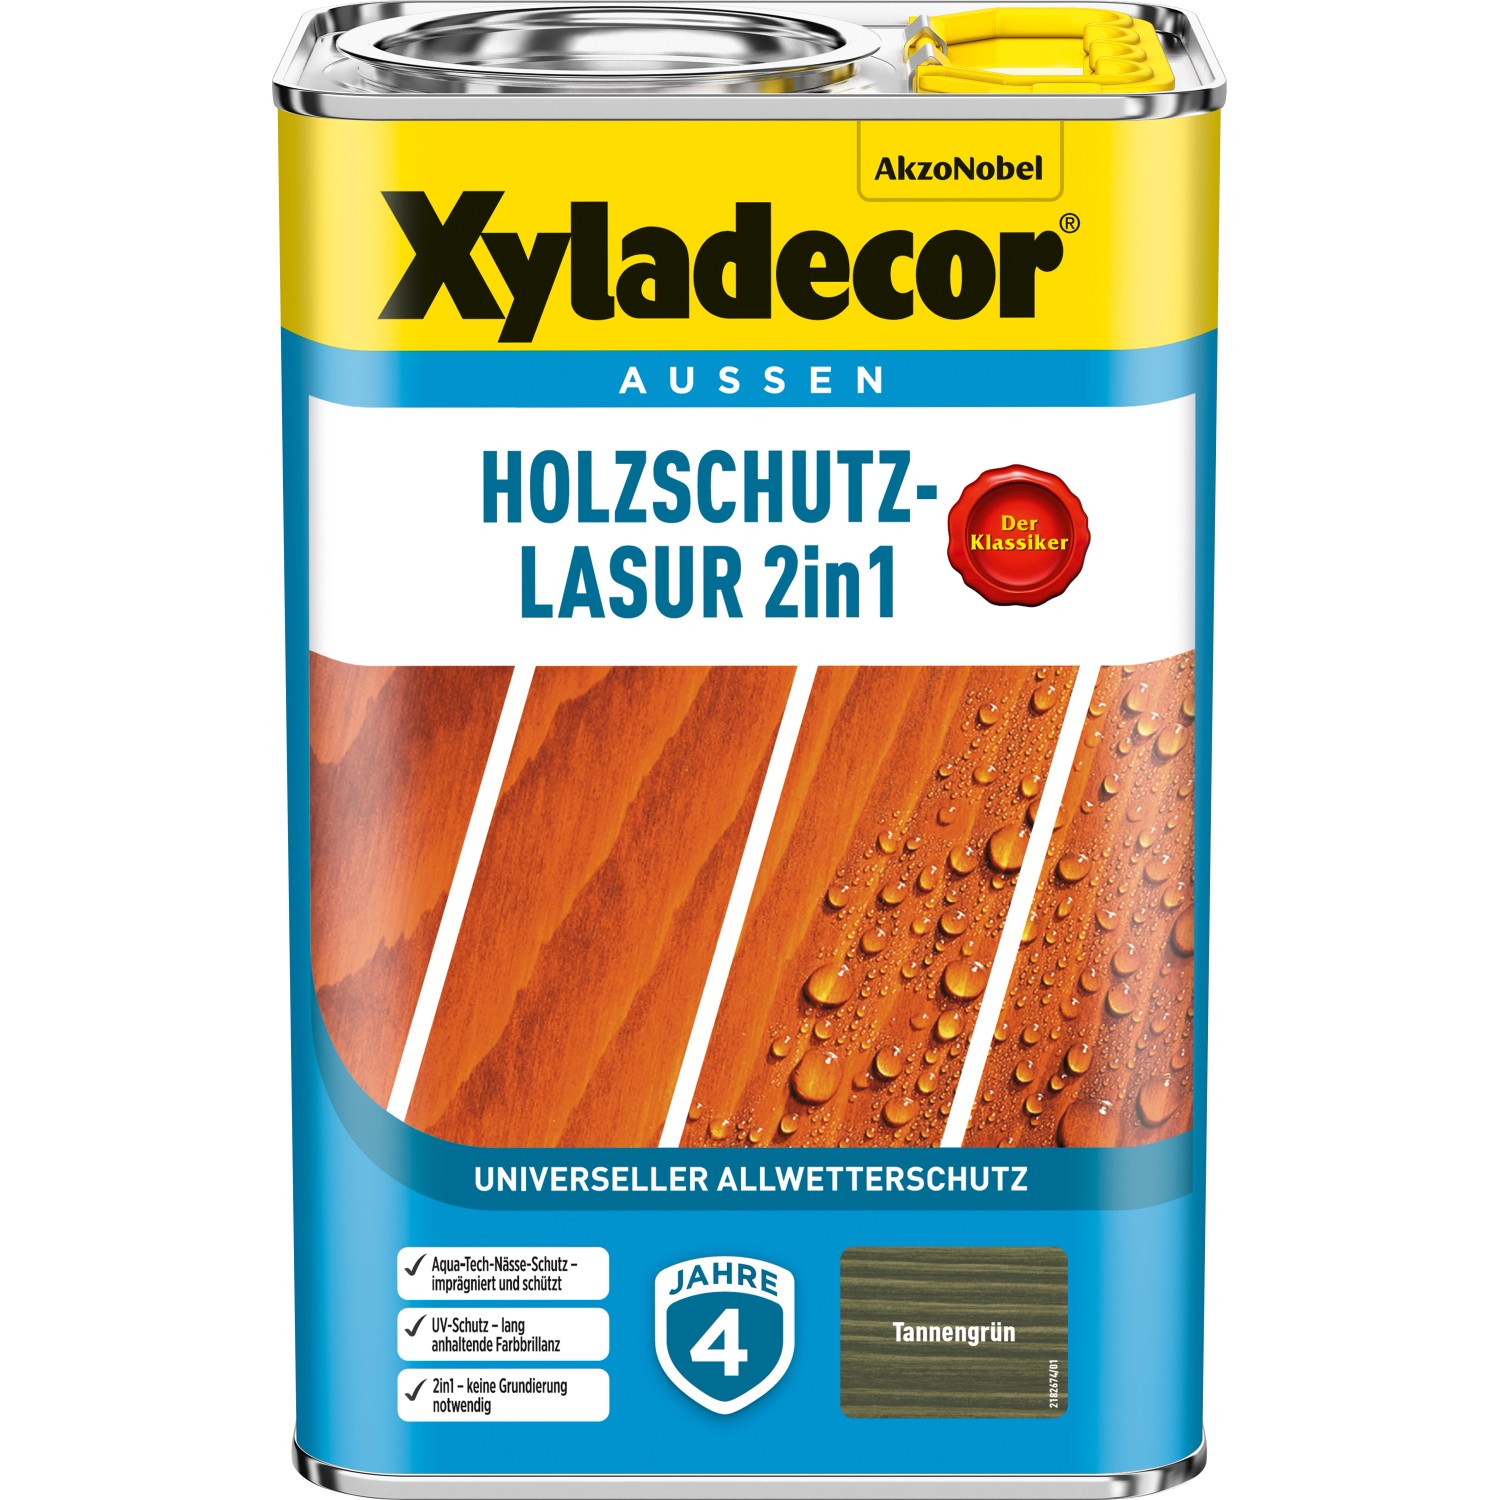 Xyladecor Holzschutz-Lasur 2in1 Tannengrün matt 4 l von Xyladecor